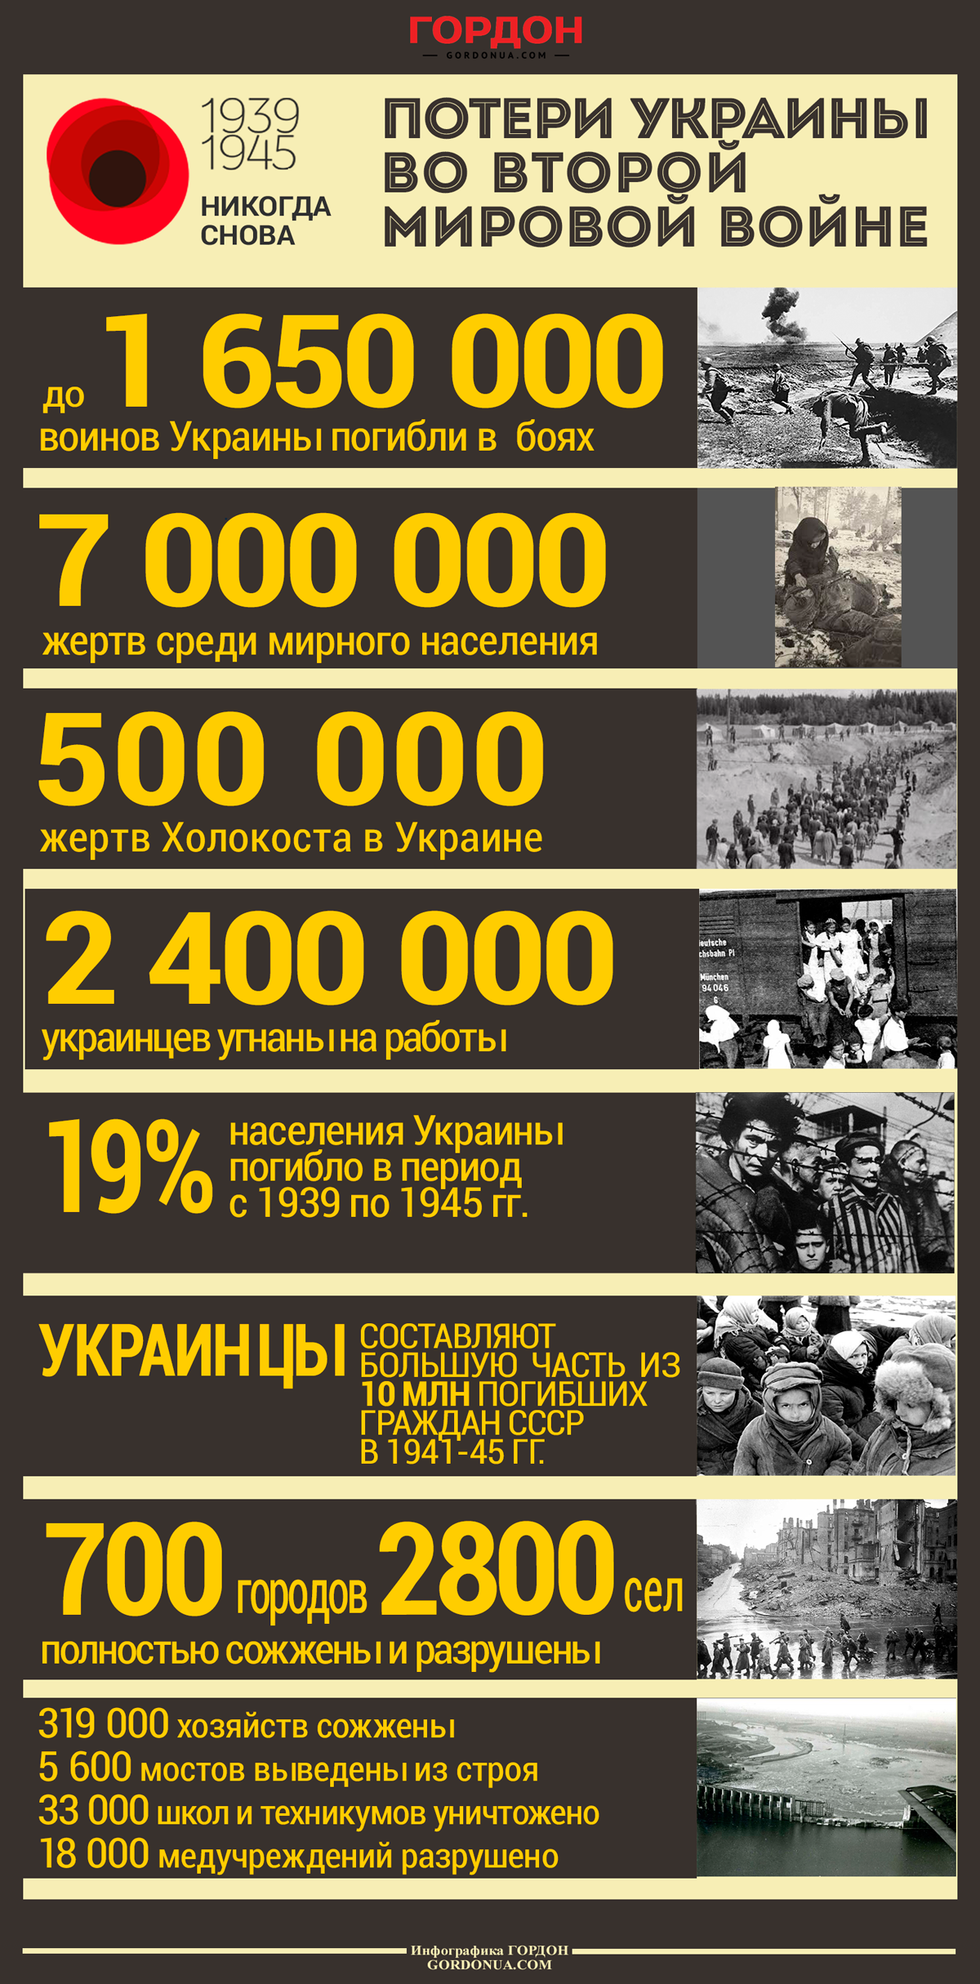 Потери Украины во Второй мировой войне